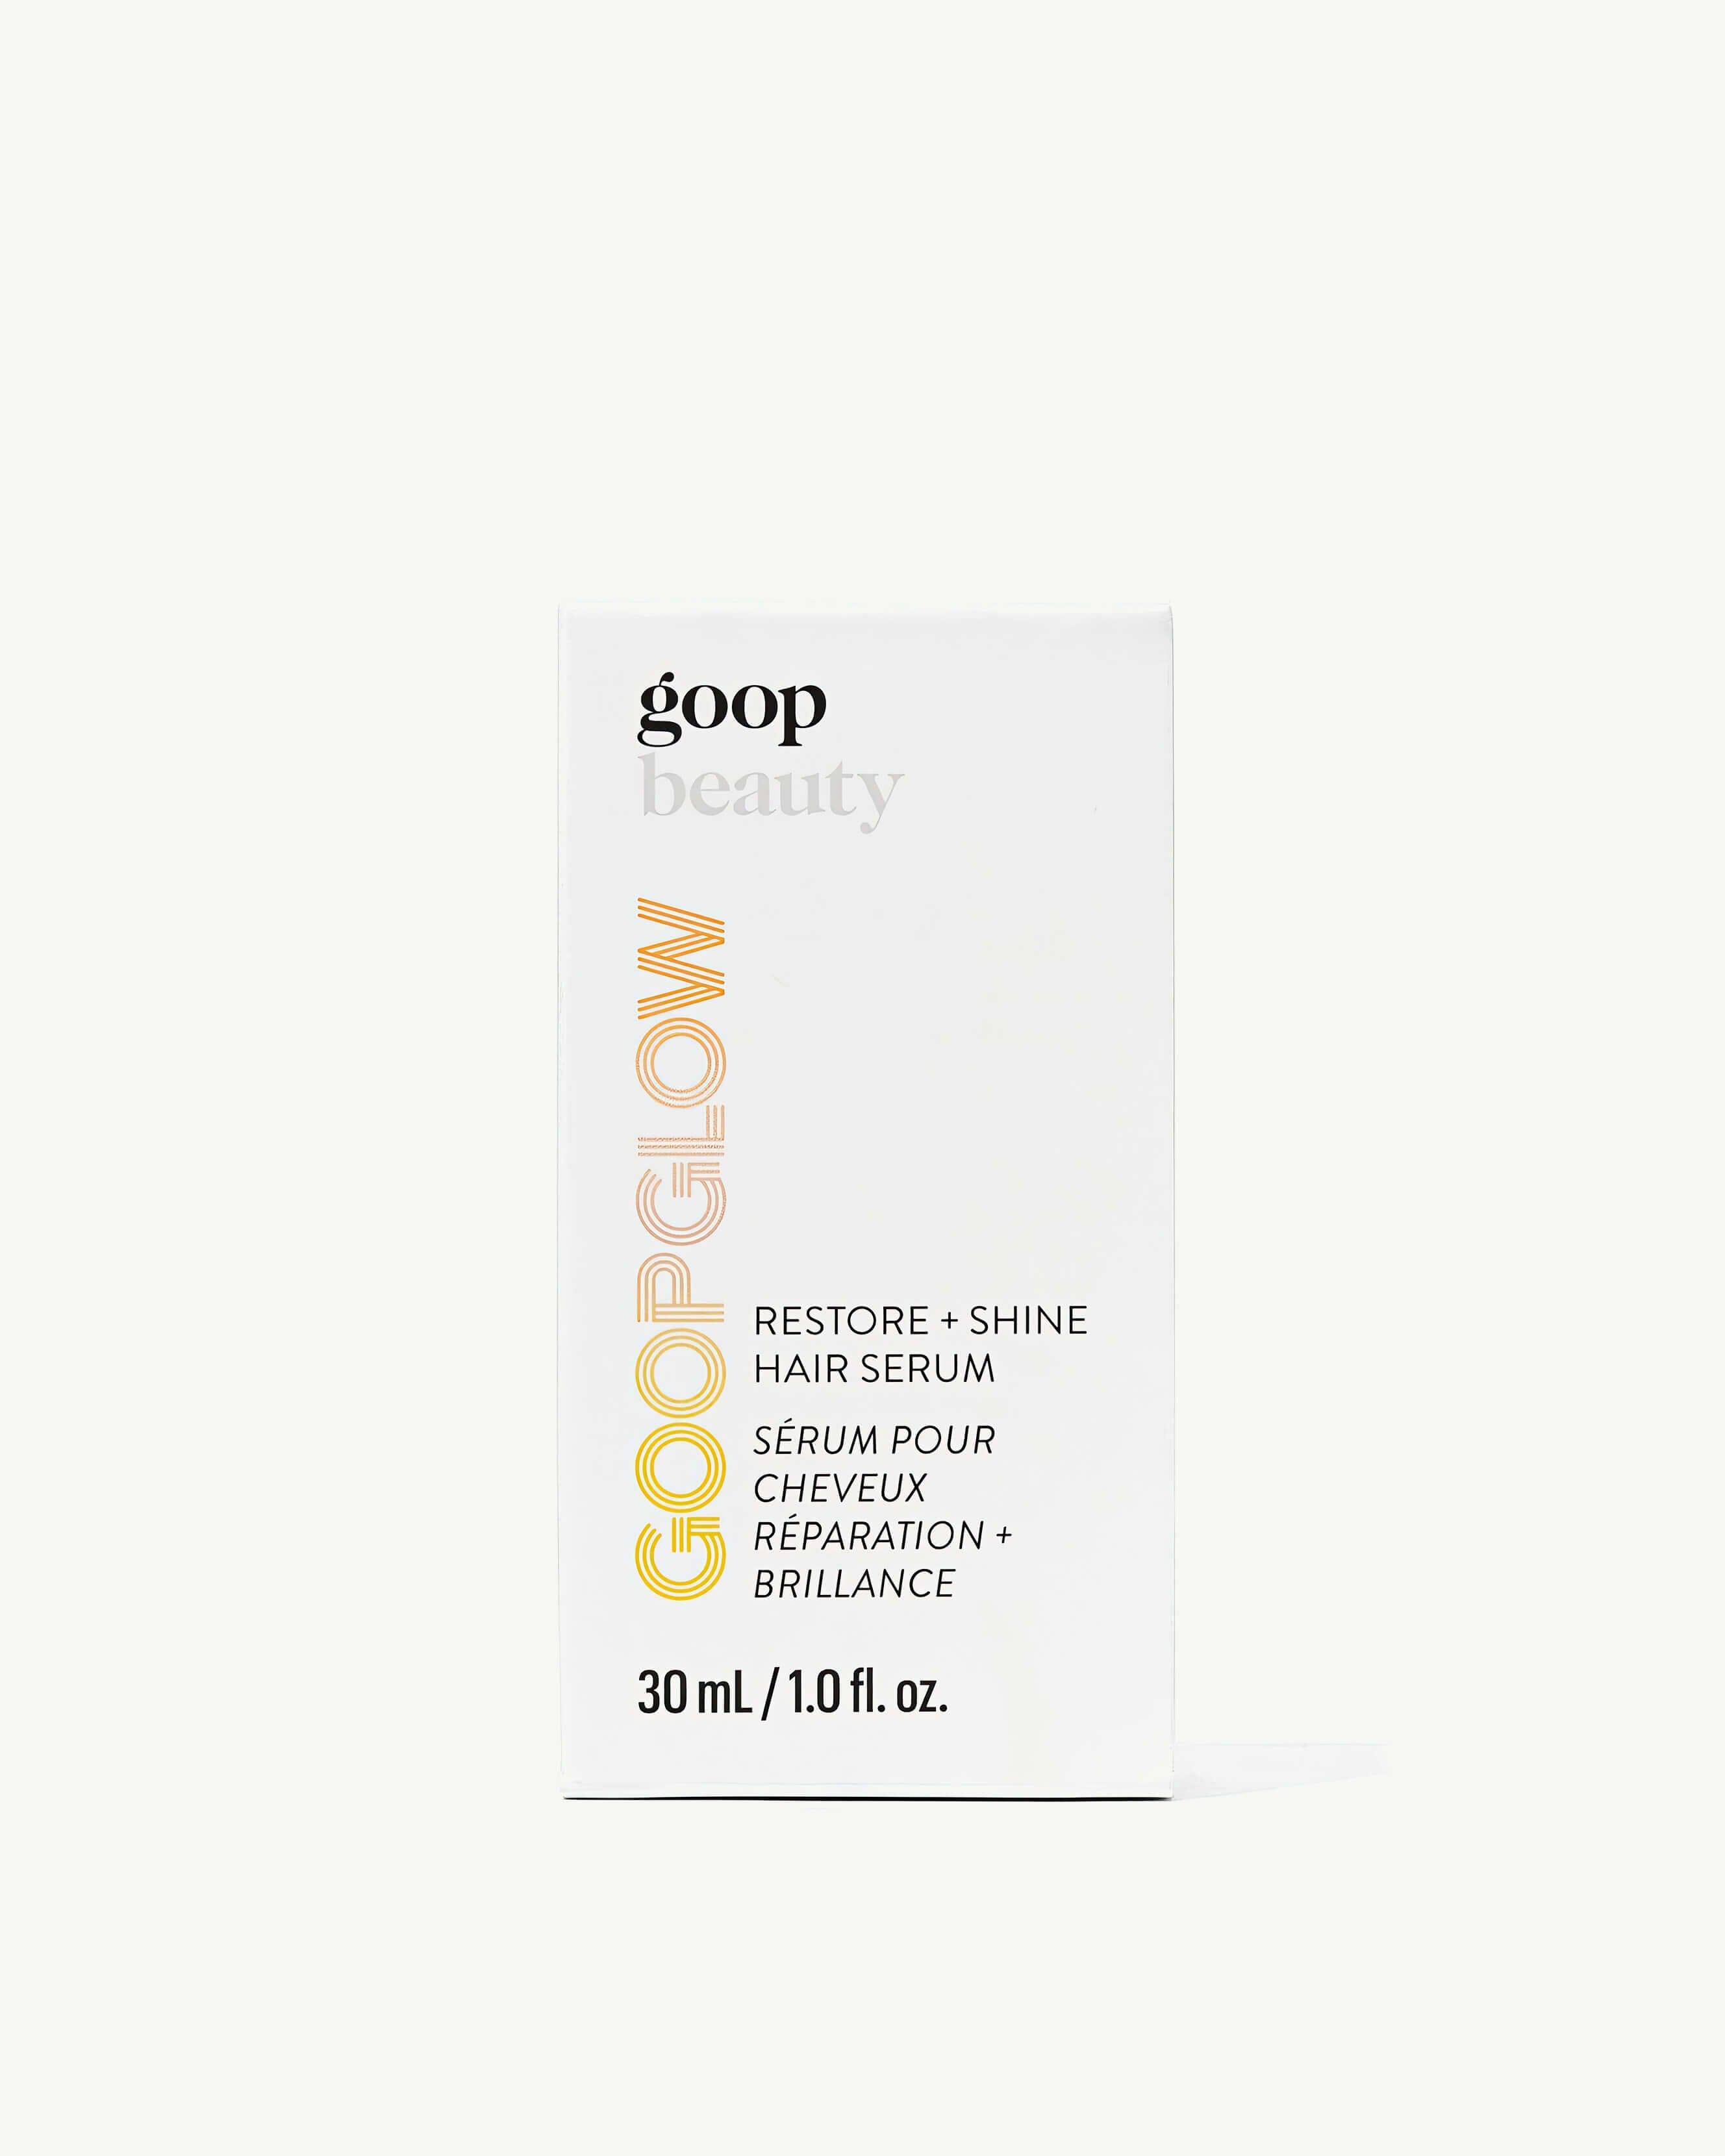 GOOPGLOW Restore + Shine Hair Serum